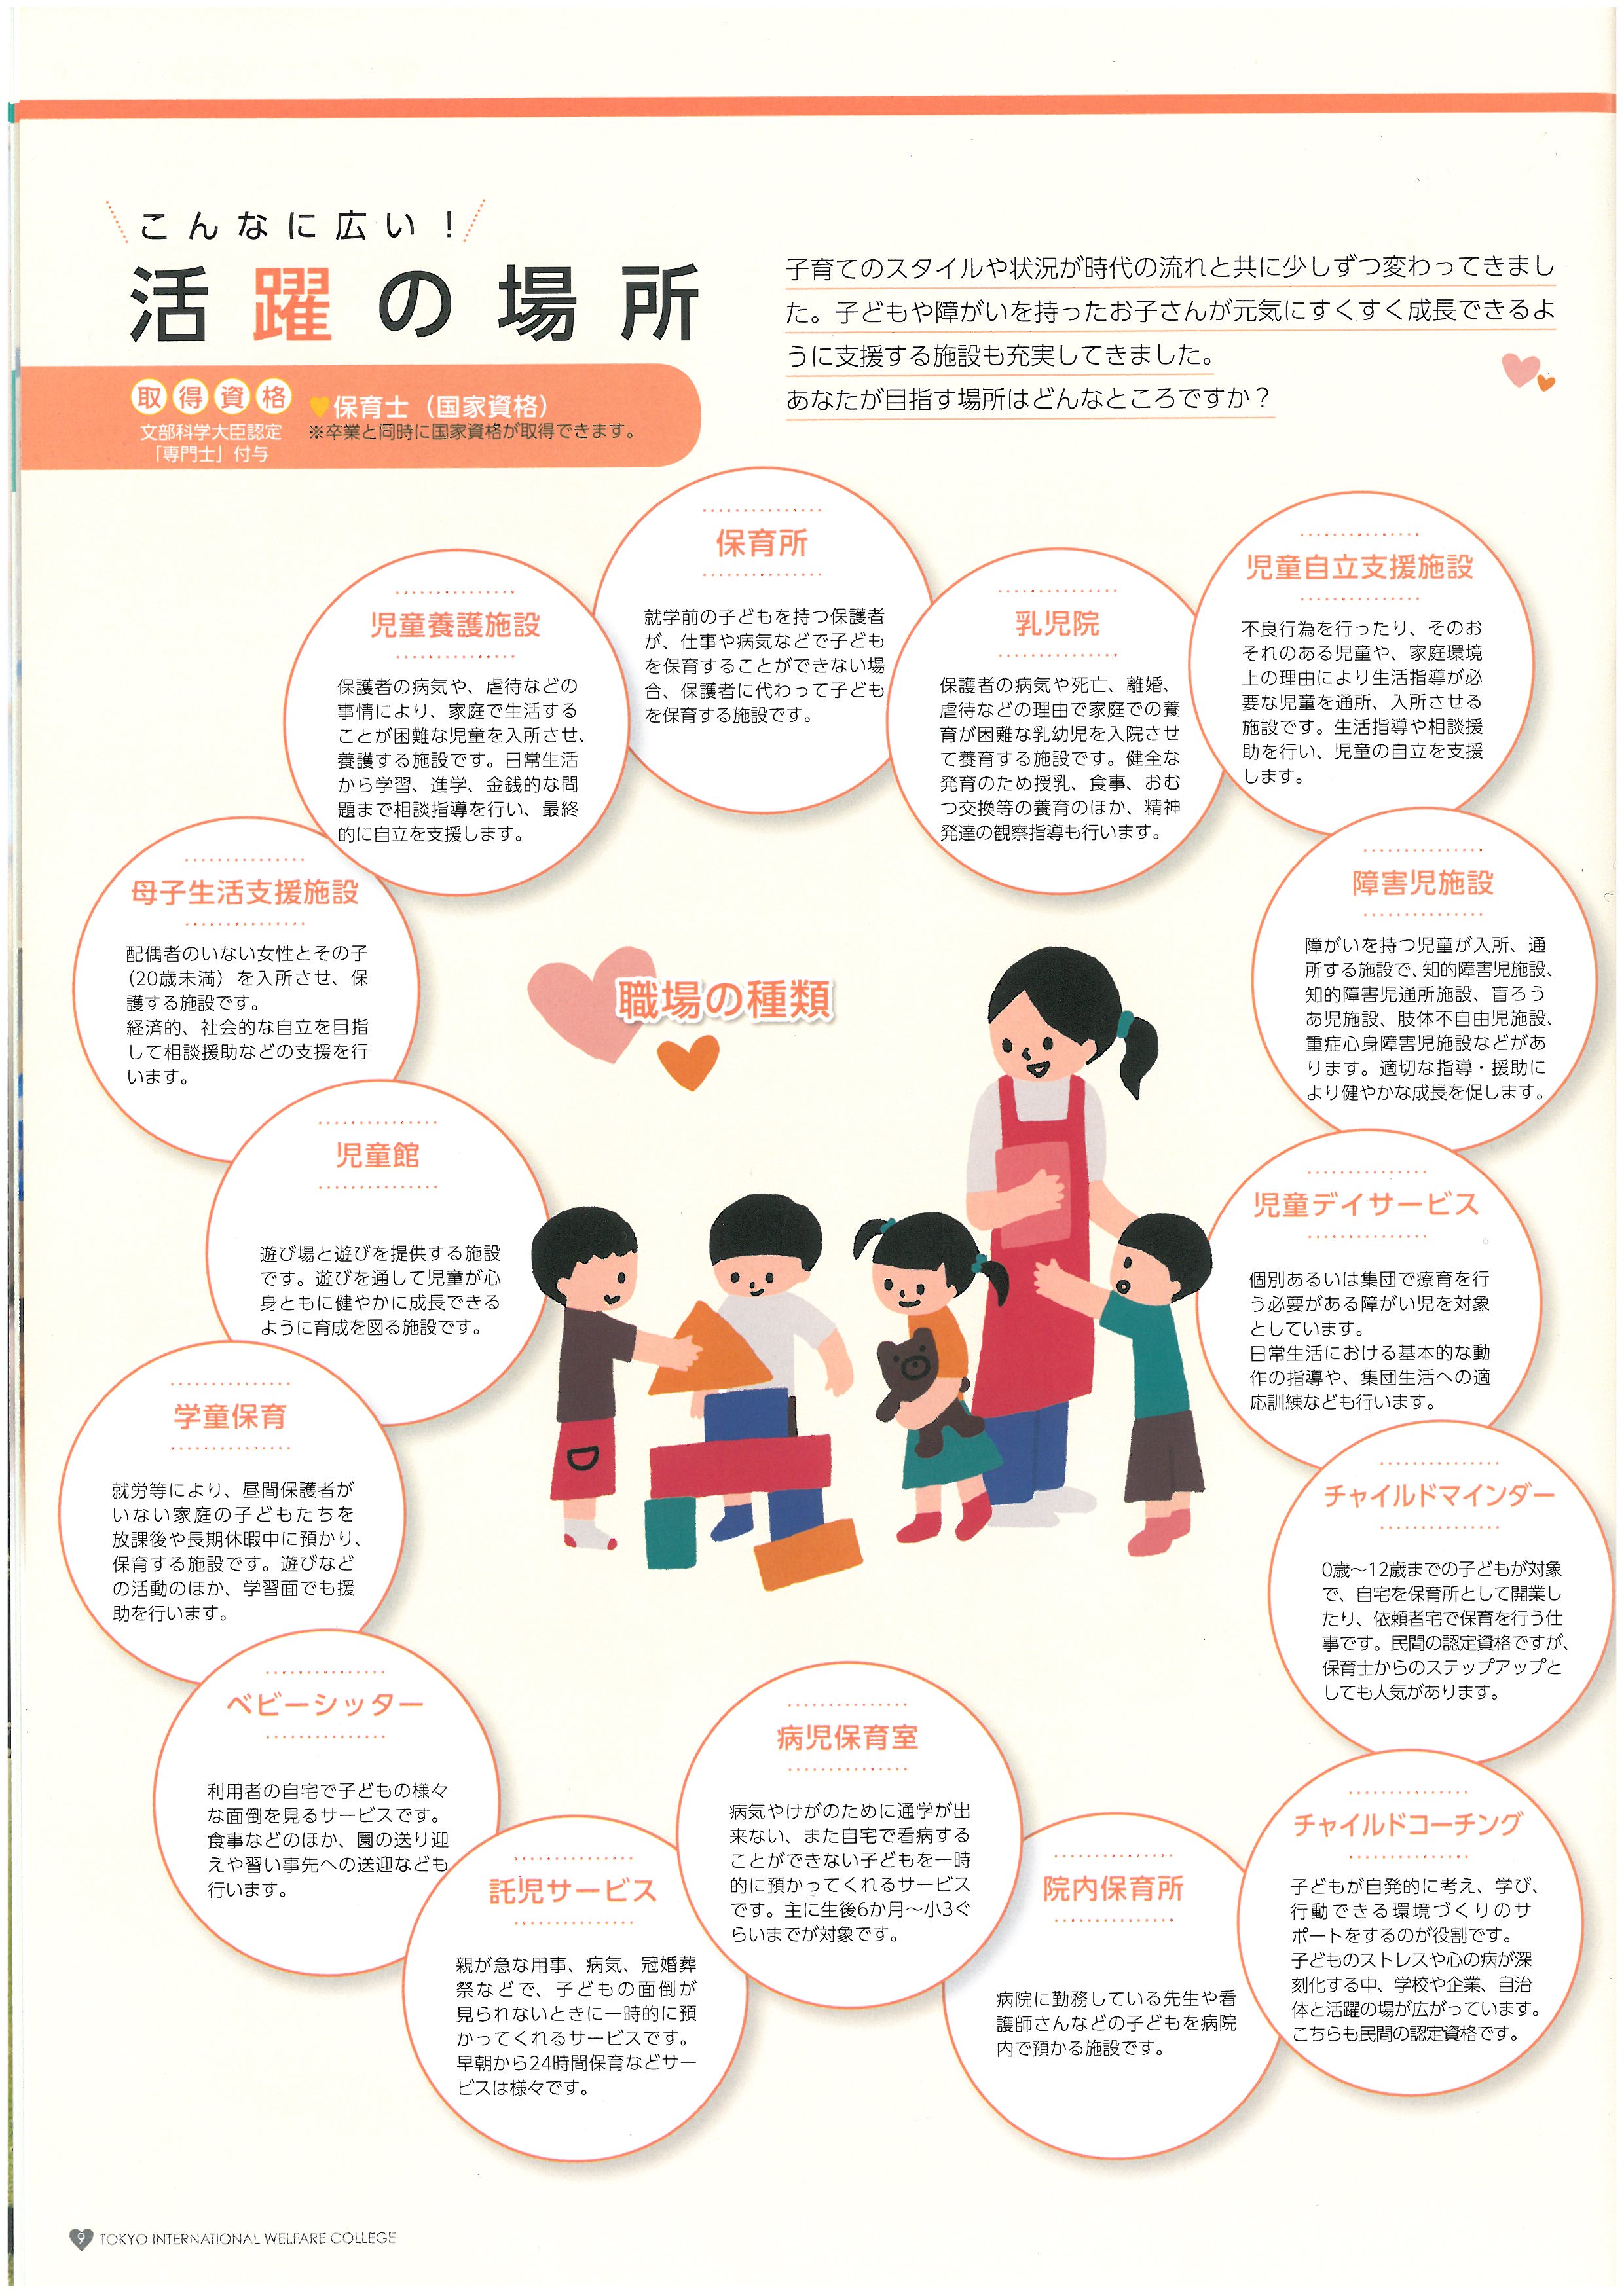 도쿄 국제복지전문학교 홍보 팜플렛 10.jpg